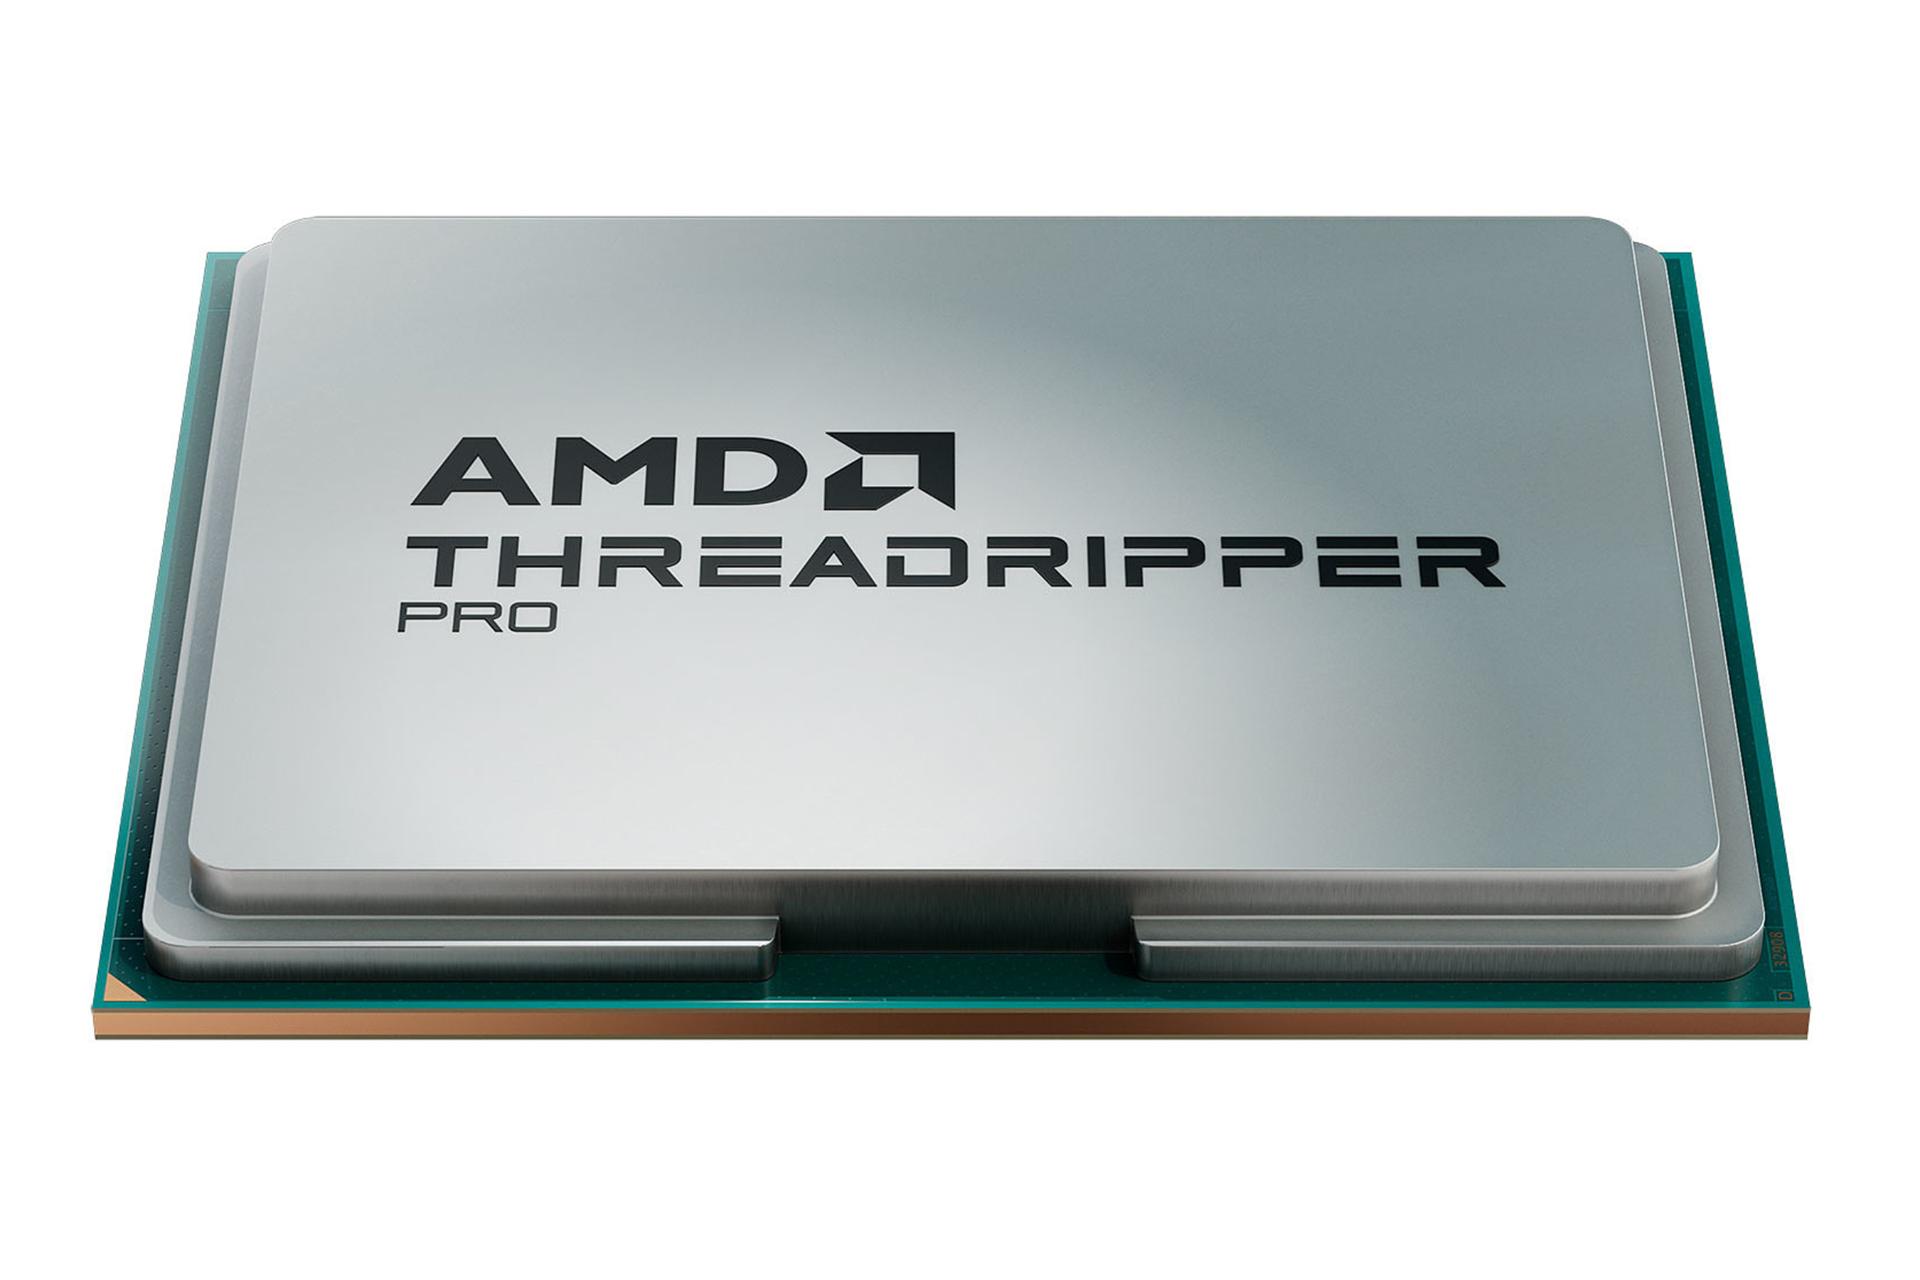 نمای پایین پردازنده AMD رایزن تردریپر پرو سری 7900 / AMD Ryzen Threadripper PRO 7900 Series